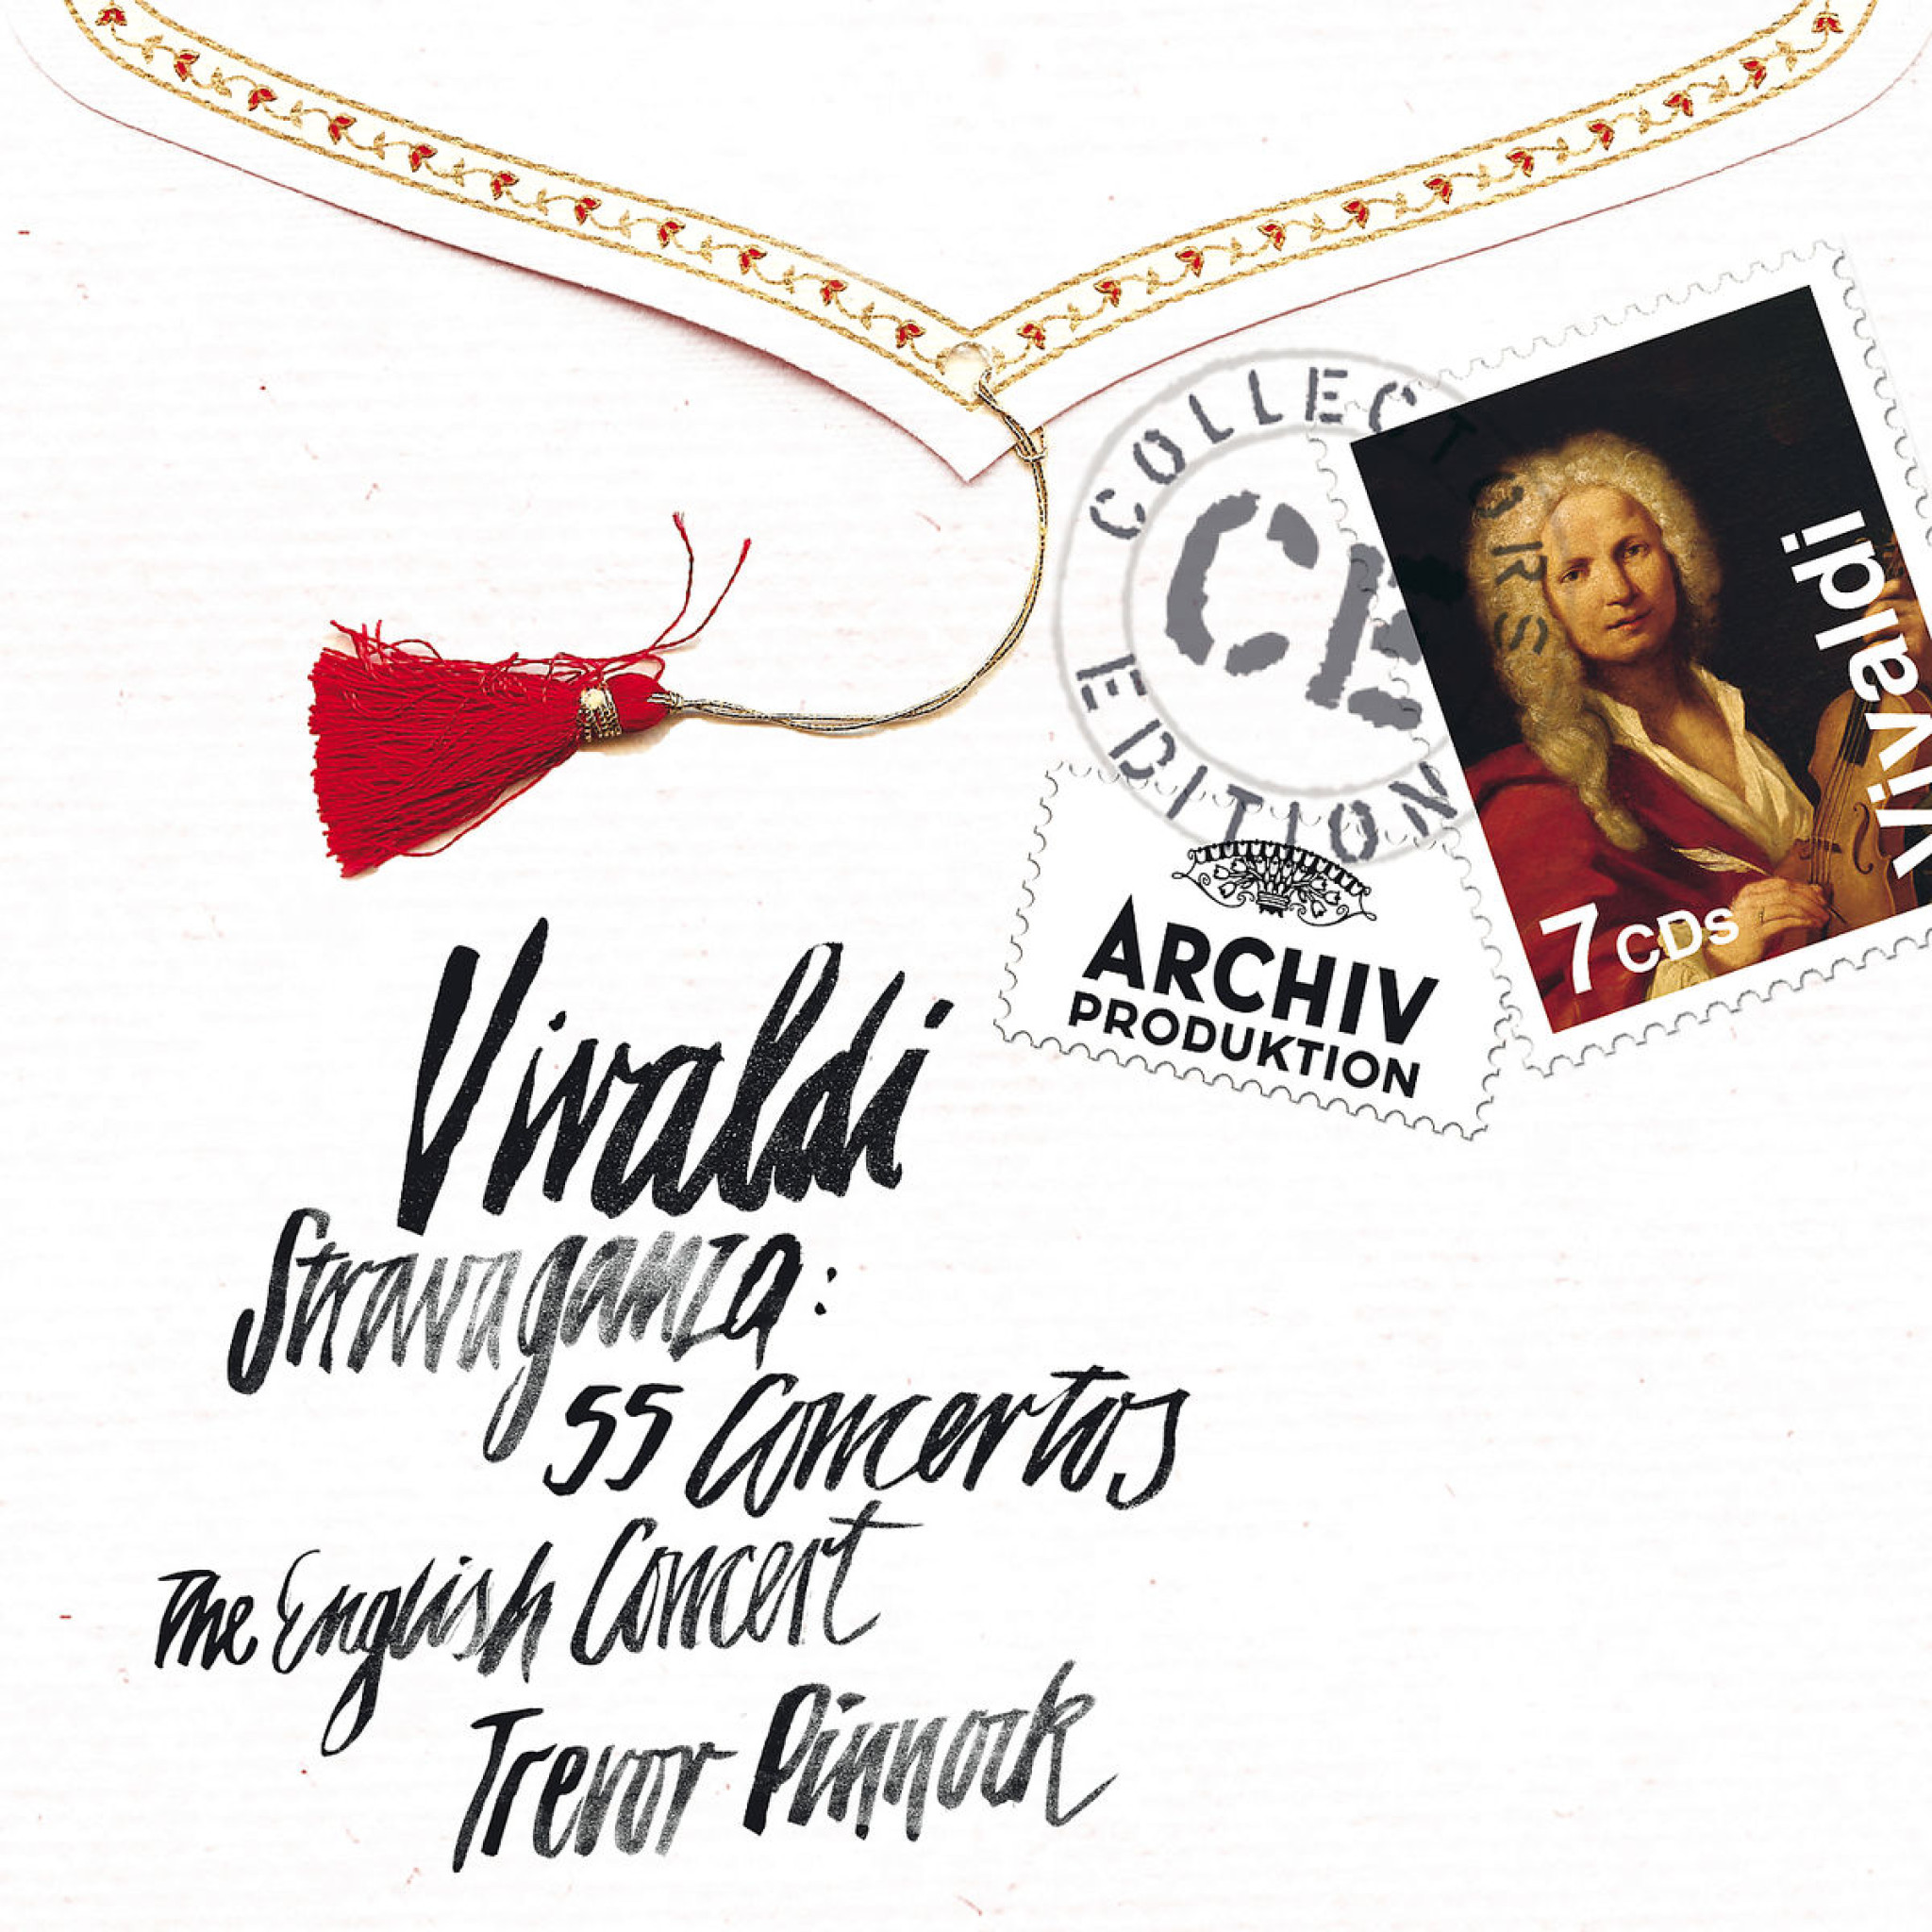 Vivaldi: Stravaganza ¿ 55 Concertos